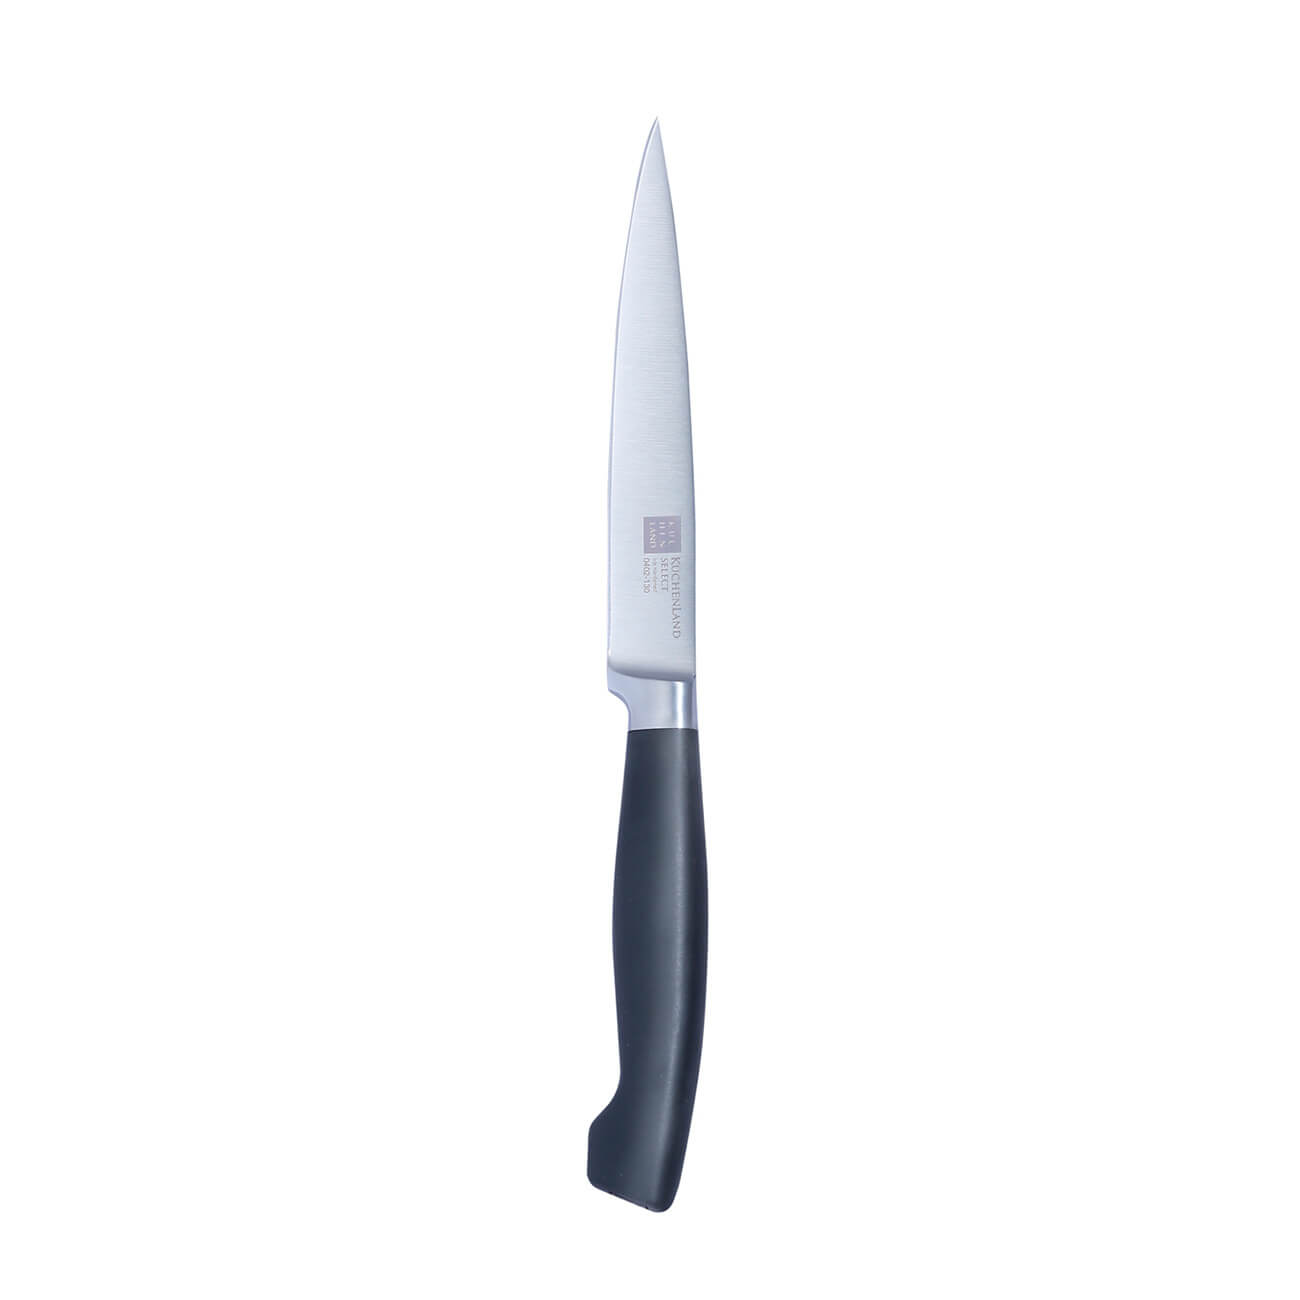 Kuchenland Нож для нарезки, 13 см, сталь/пластик, Select набор для выпечки 5 пр скалка венчик формы силикон сталь дерево фигуры bakery